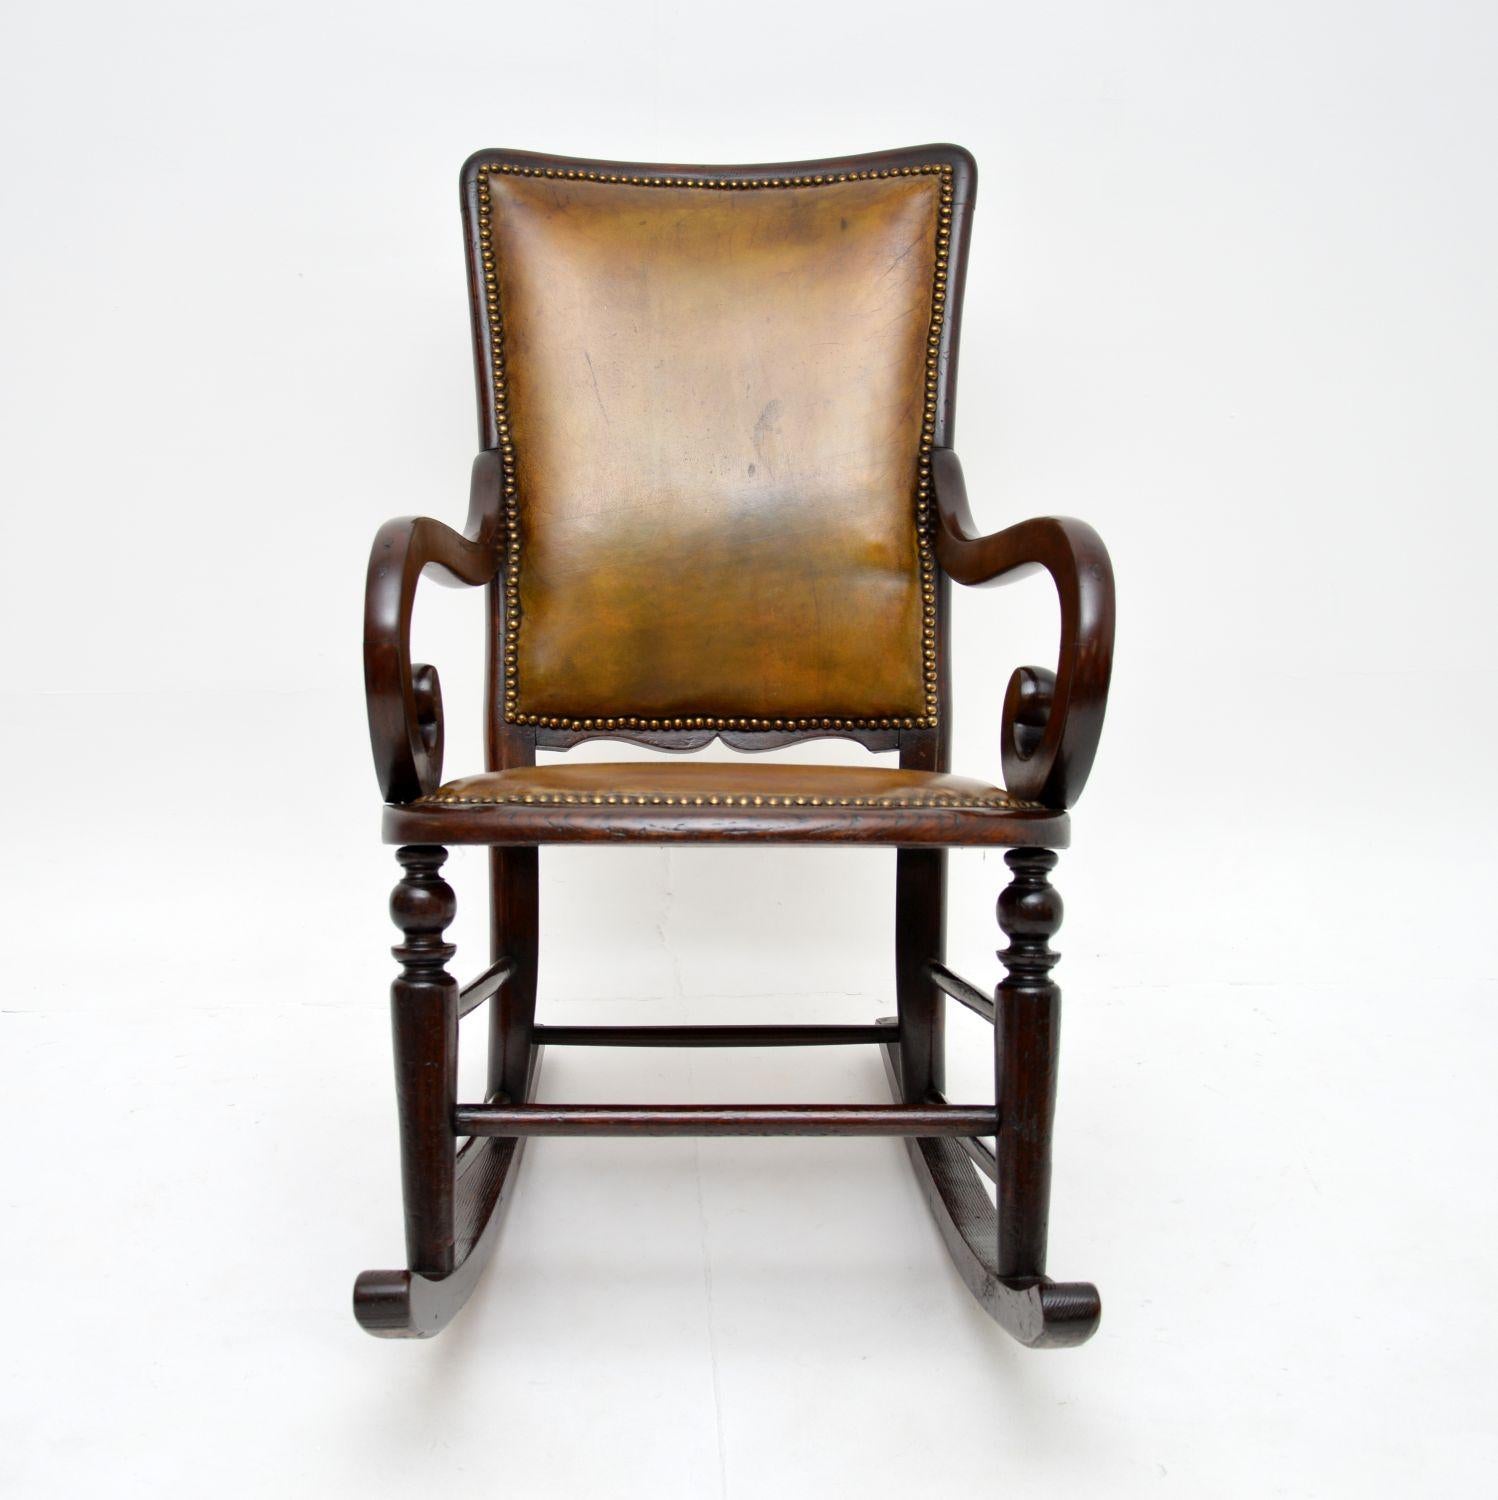 Ein charmanter antiker Schaukelstuhl aus der viktorianischen Zeit. Sie wurde in England hergestellt und stammt aus der Zeit zwischen 1860 und 1880.

Sie ist von hervorragender Qualität, recht zierlich und dennoch sehr bequem zum Entspannen. Der